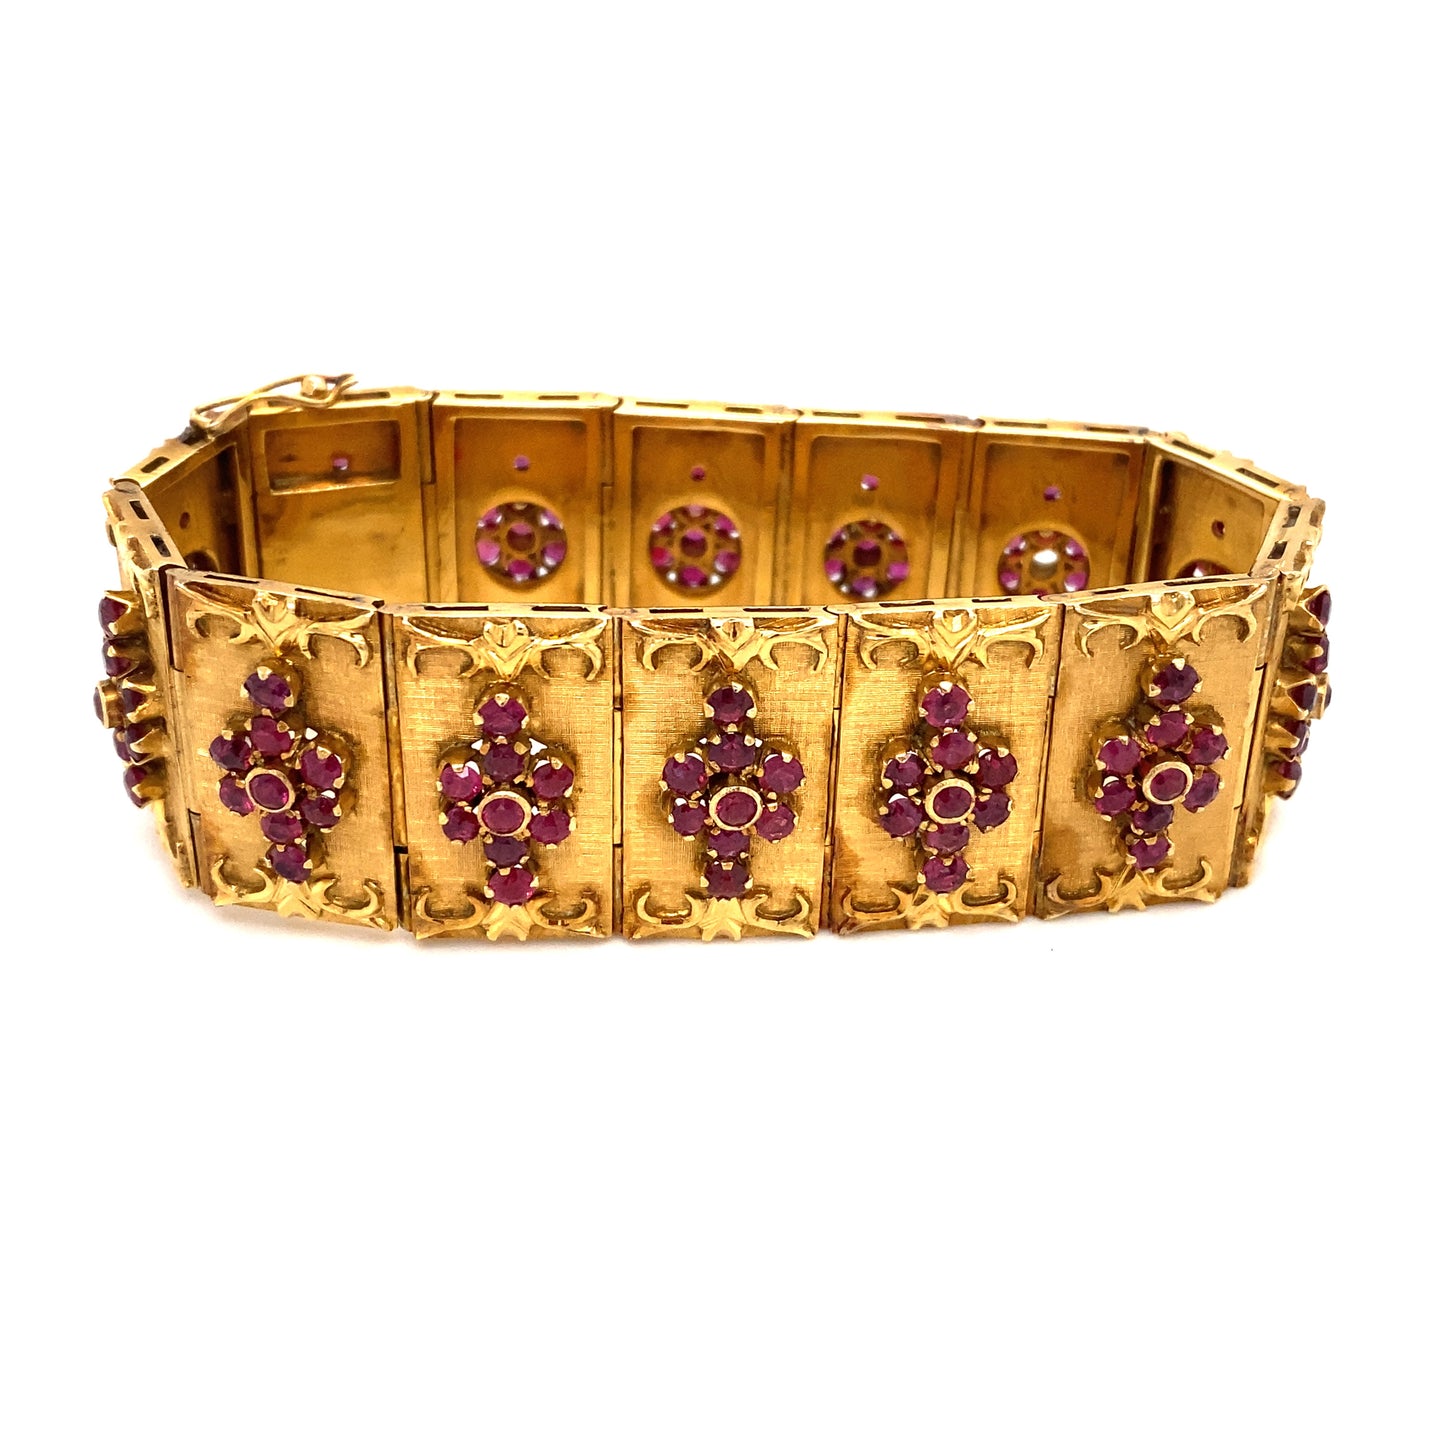 Circa 1960s Ruby Panel Bracelet in 14K Gold